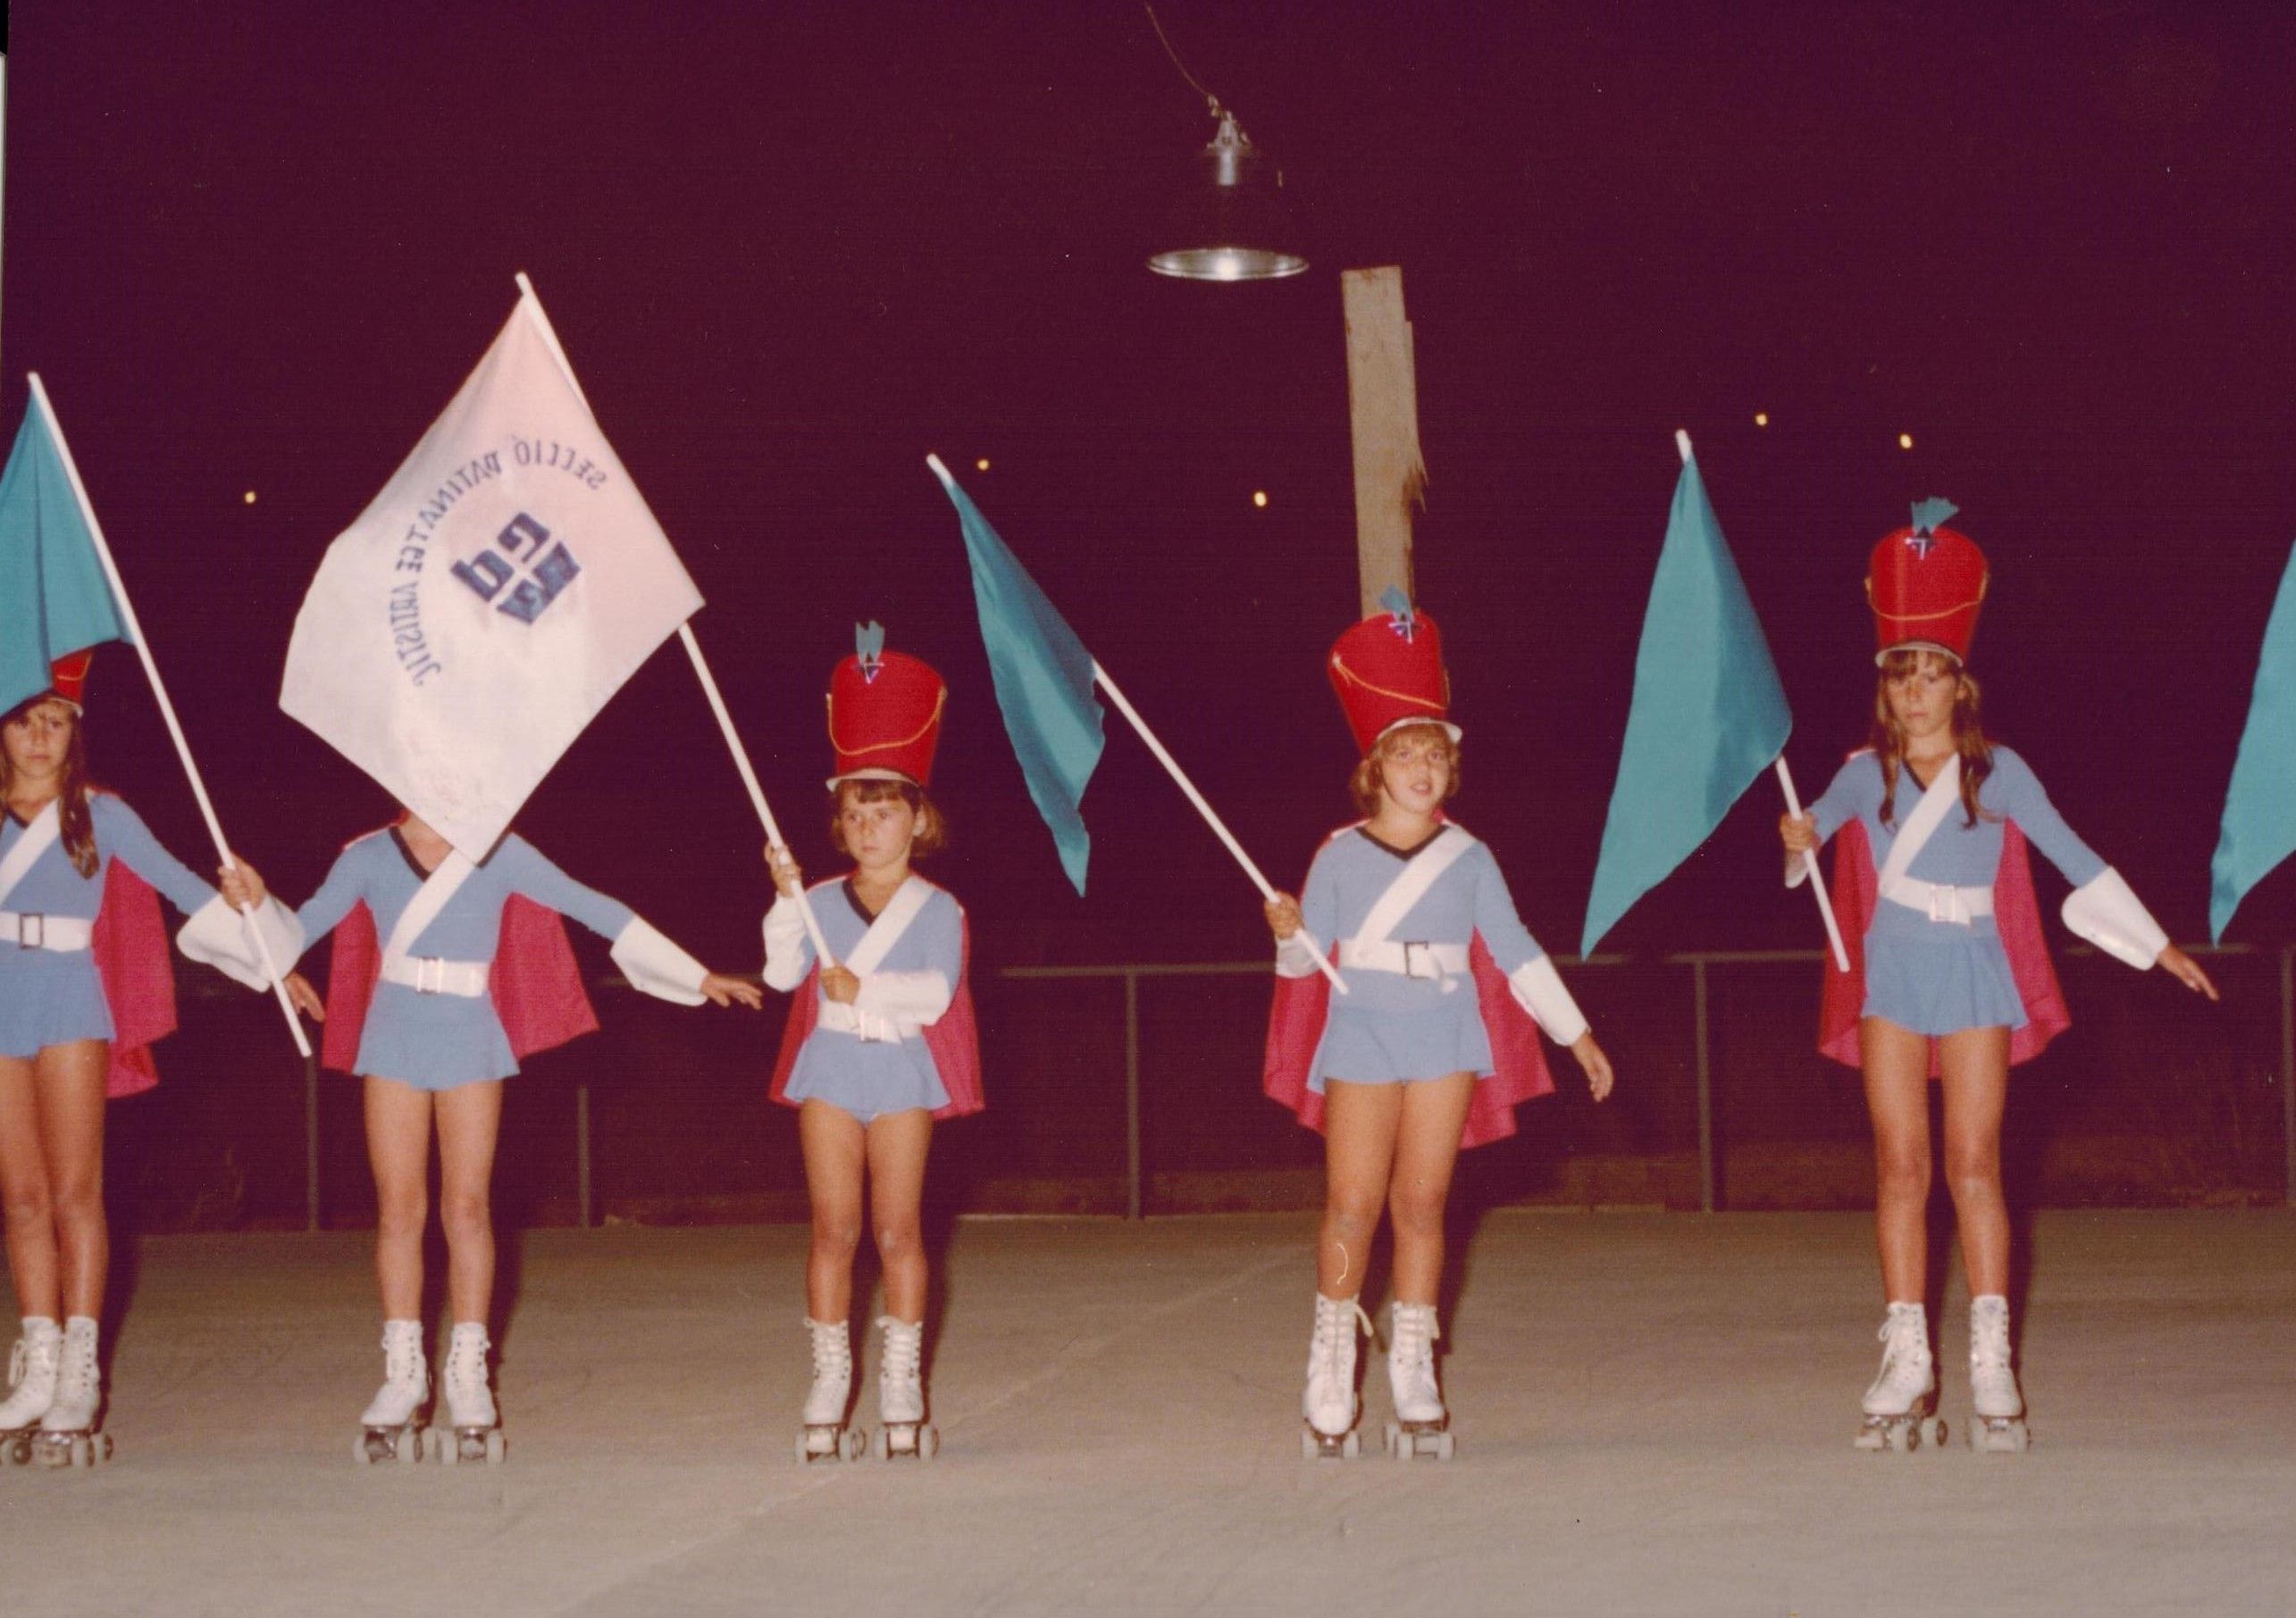 Equip de competició de patinatge artístic, el juliol de 1981